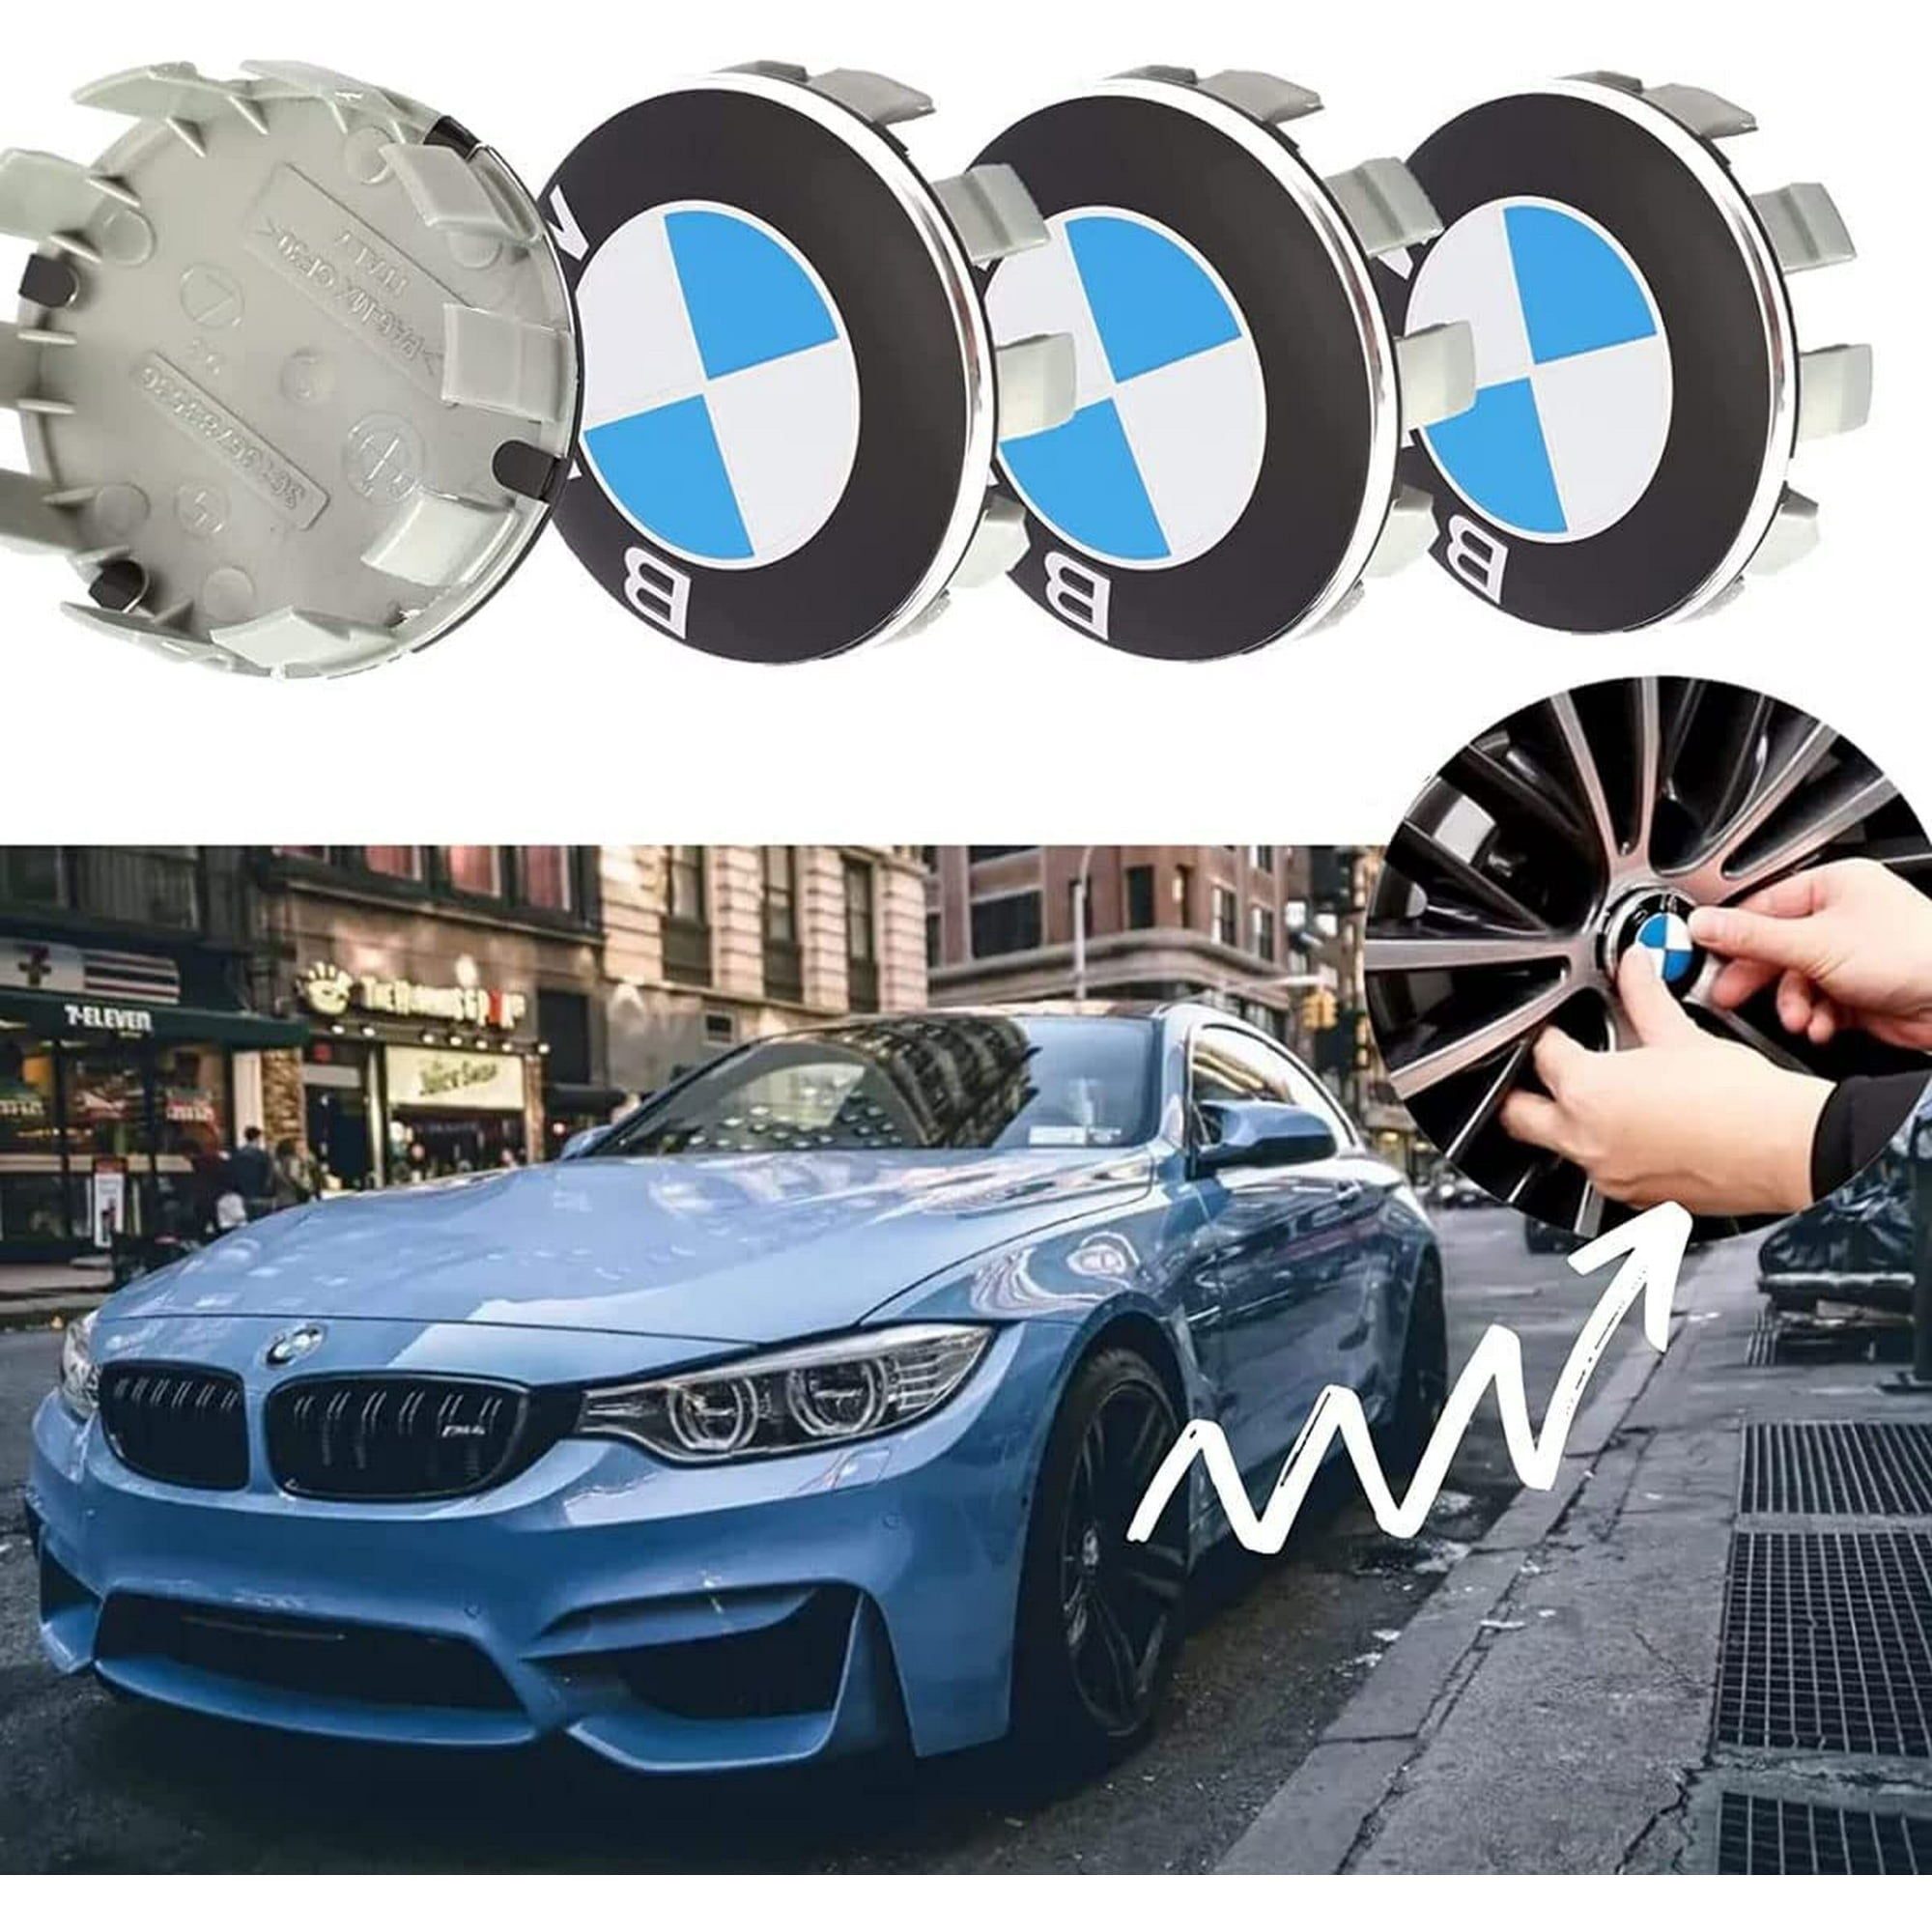 4 pièces Cache Moyeux Compatible with BMW 68mm Centre Roue ABS Accessoires  de Voiture,Bleu